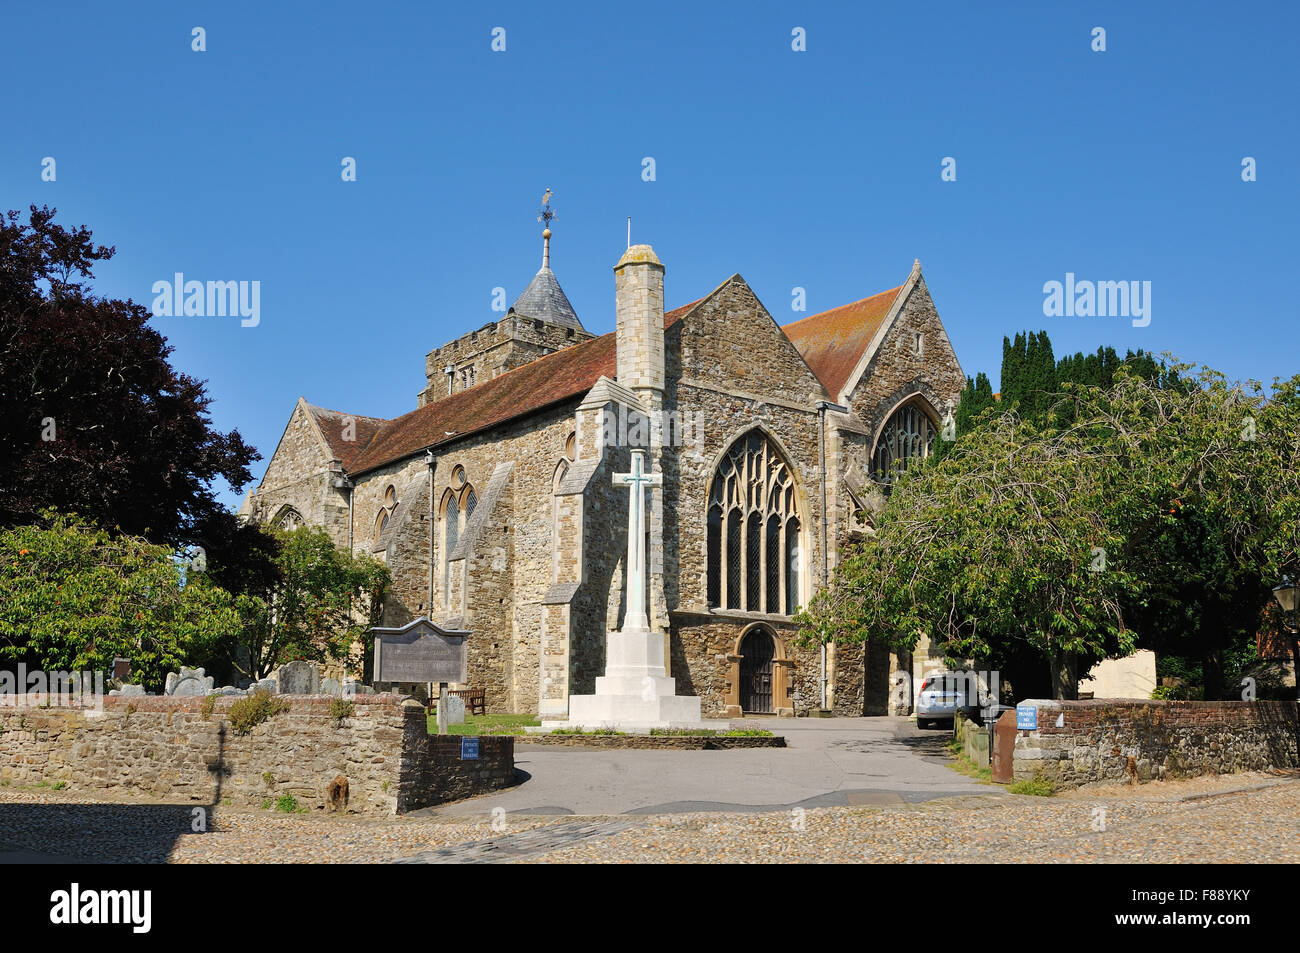 Das Äußere der mittelalterlichen Kirche St. Mary, von Church Square, in der historischen Stadt Rye, East Sussex, Großbritannien Stockfoto